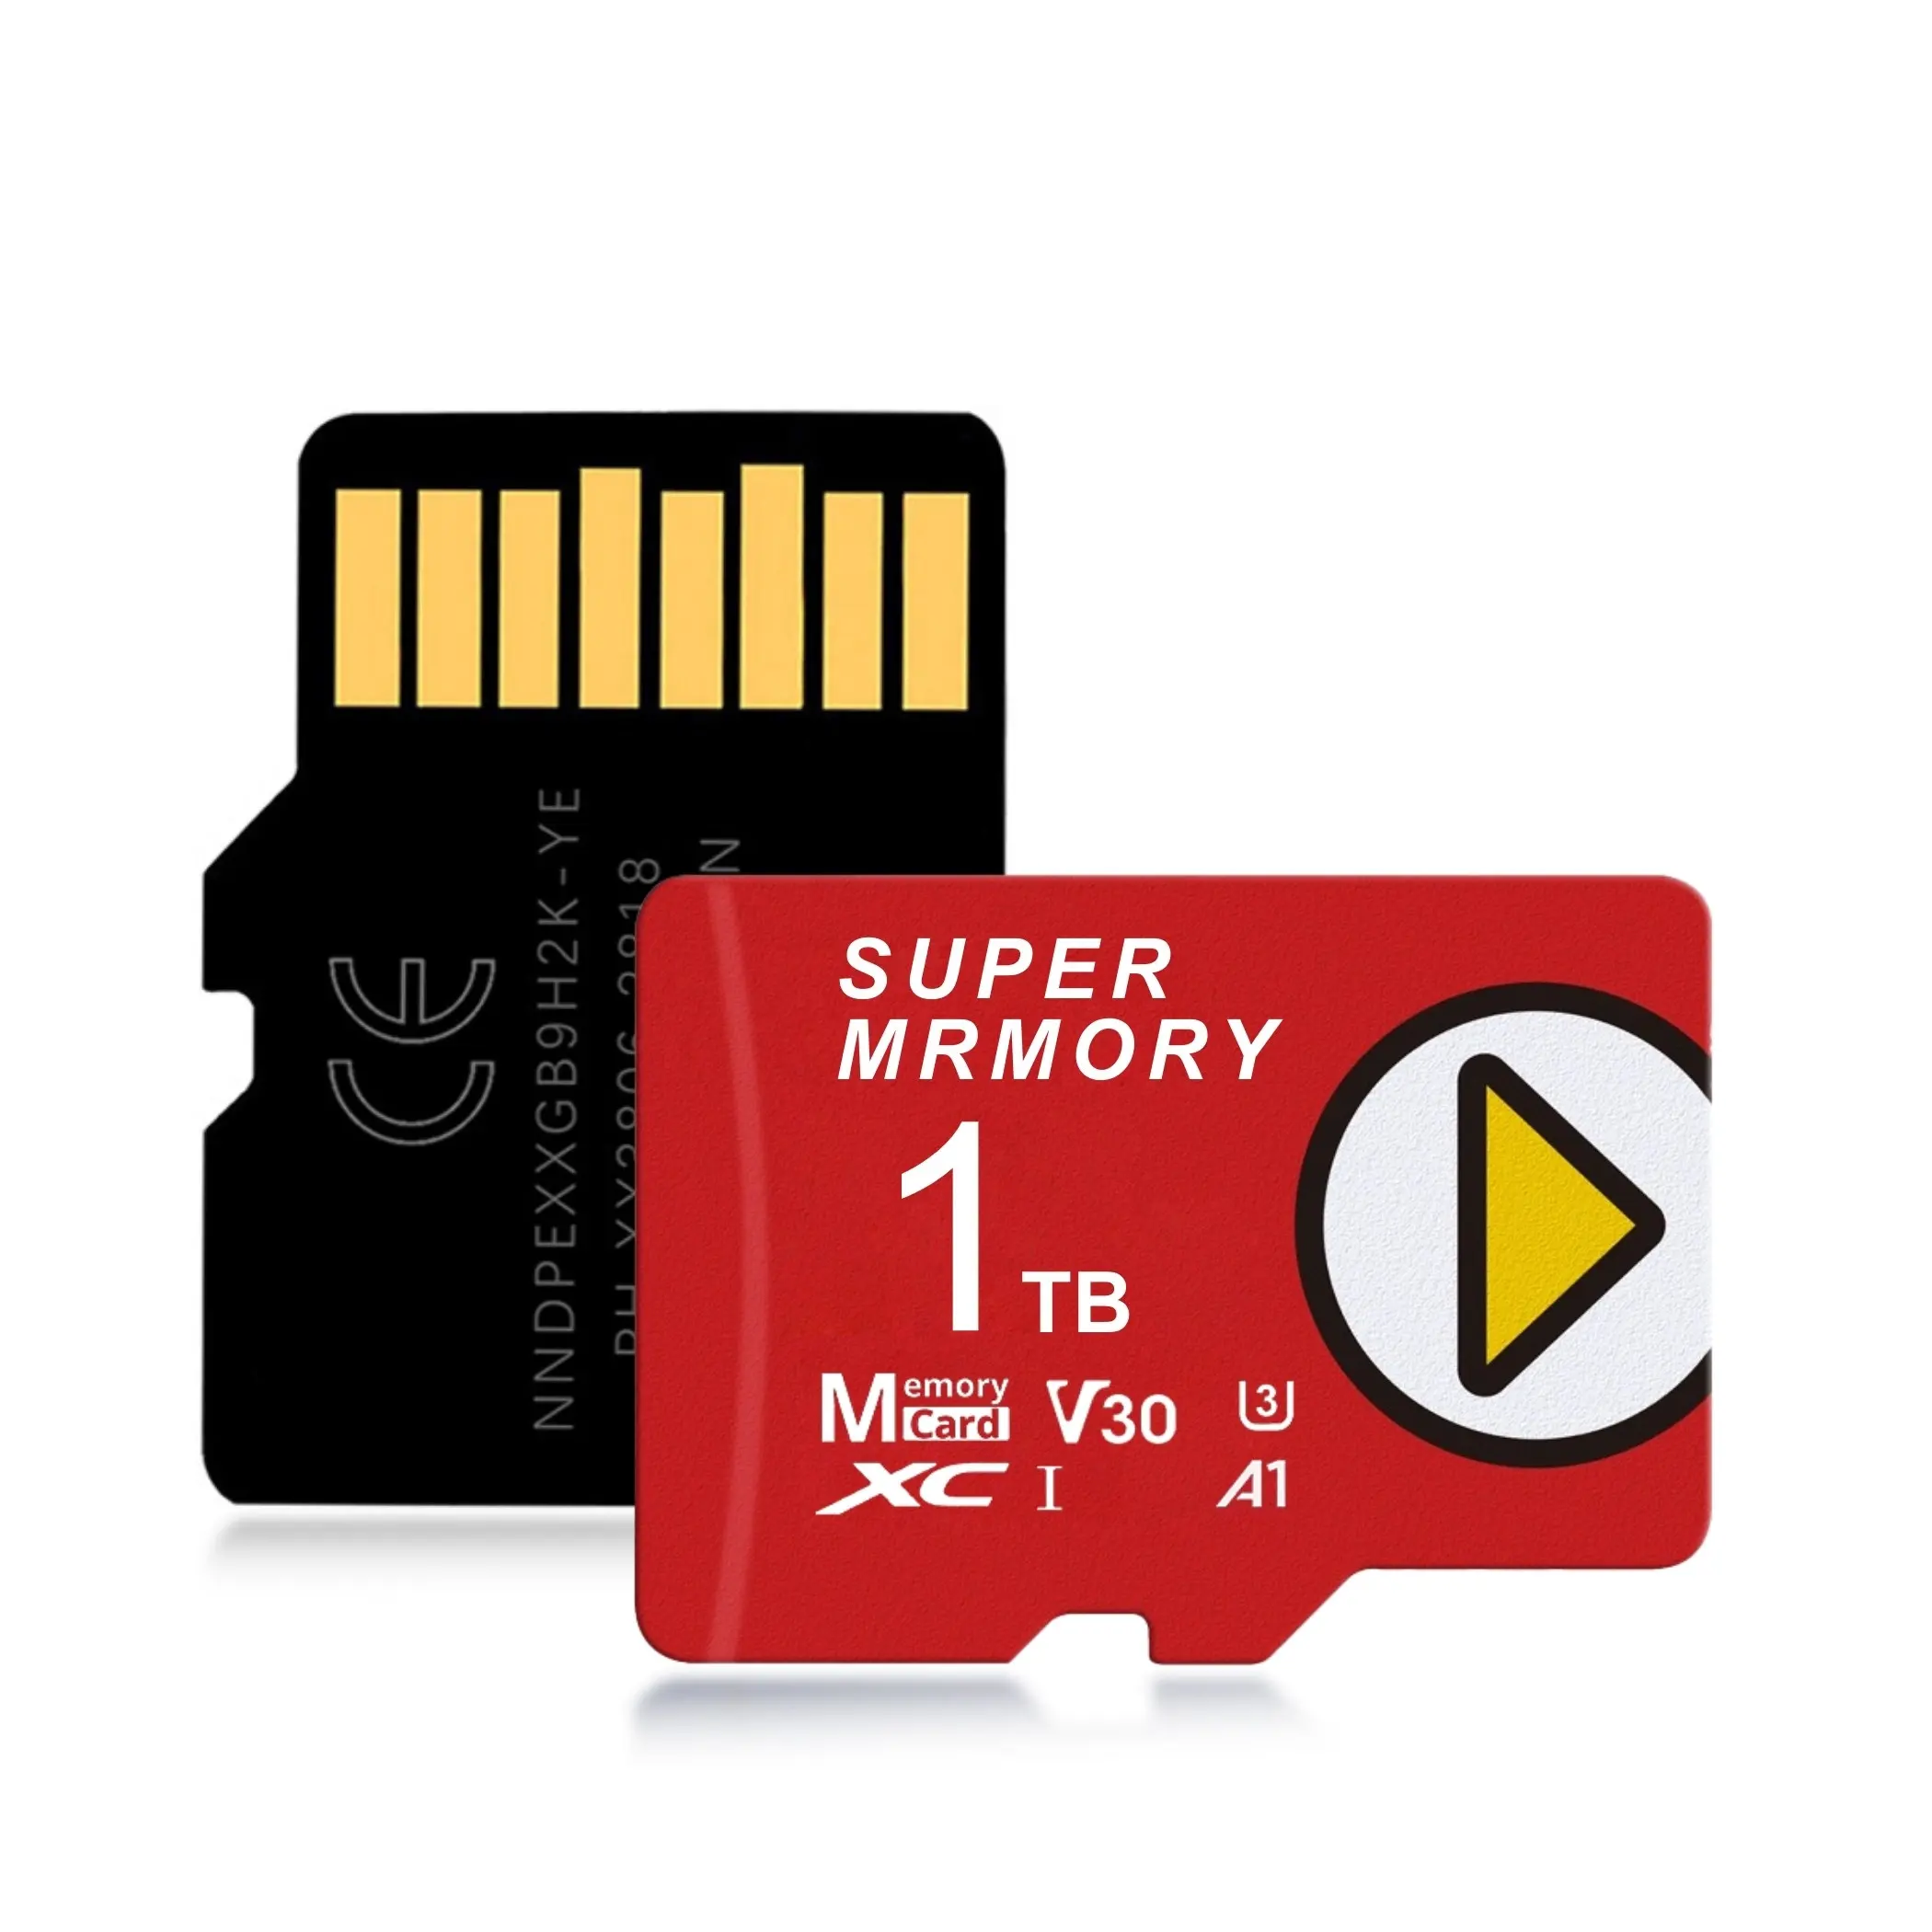 मूल चिप्स वास्तविक क्षमता 1TB माइक्रो टीएफ कार्ड गेम क्यूब गेमिंग कंसोल के लिए फुल जीबी मेमोरी एसडी कार्ड